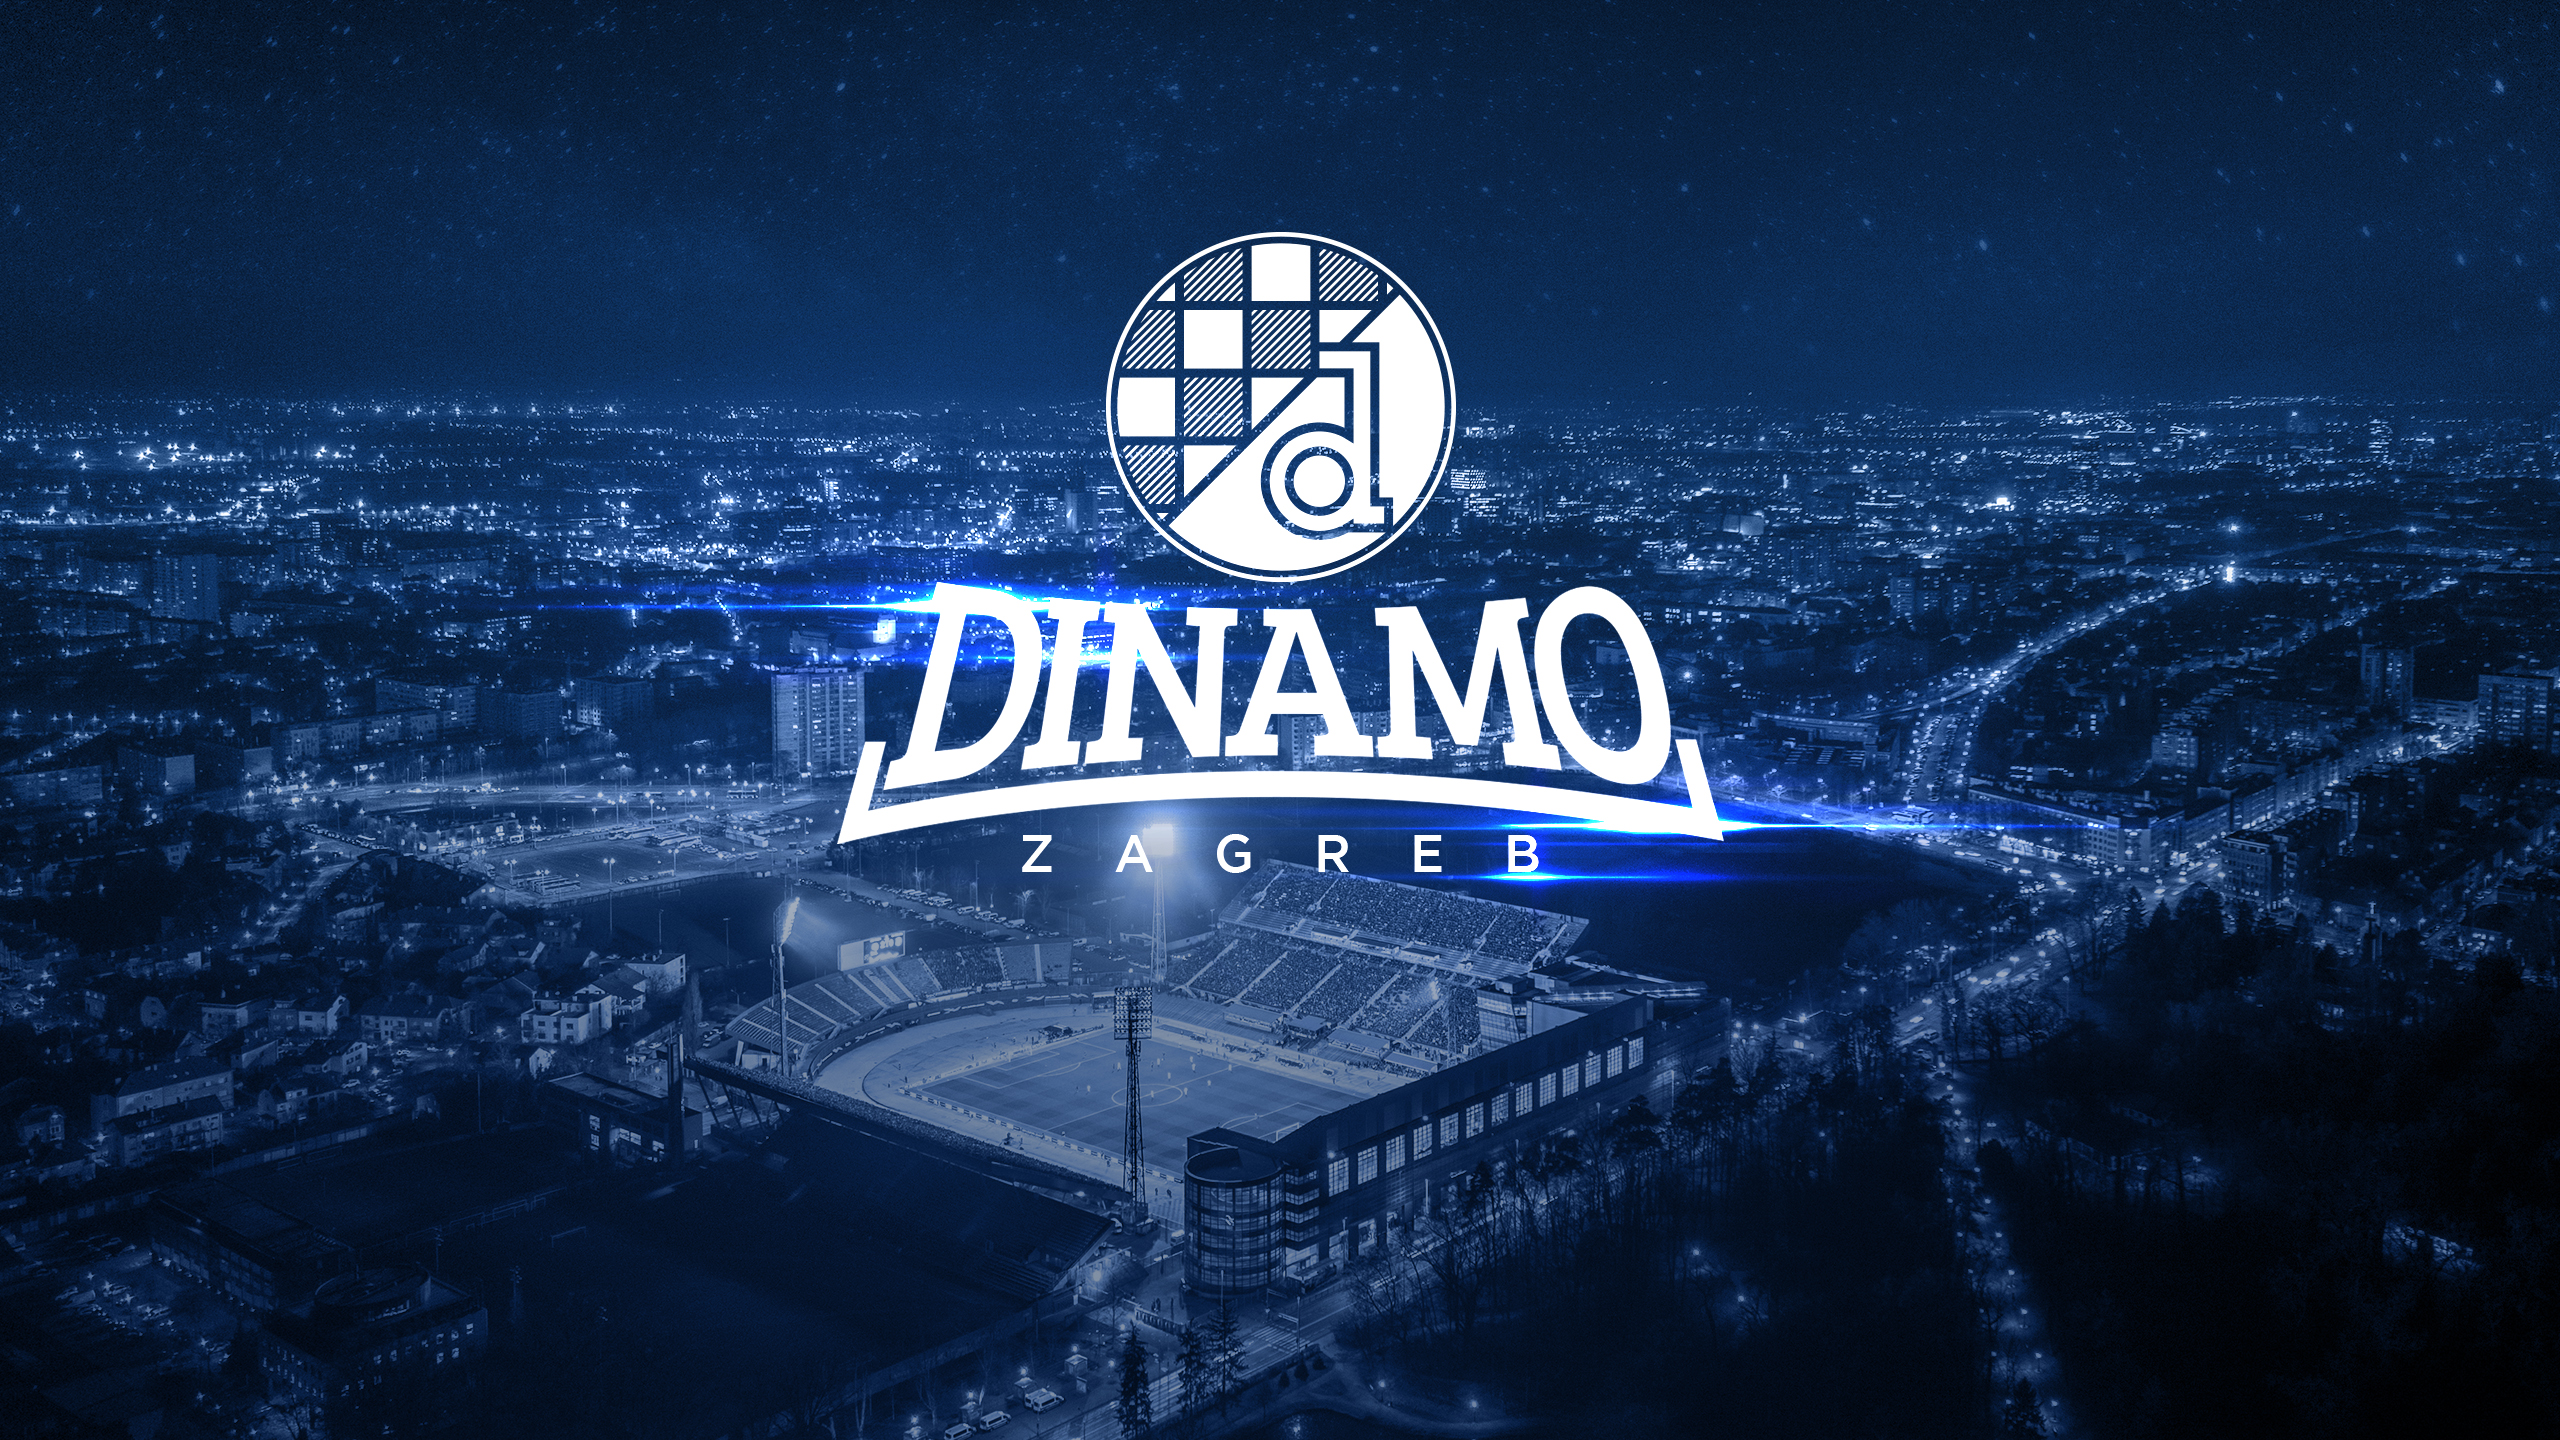 PREUZMI WALLPAPER - 20 godina od povratka imena Dinamo ...